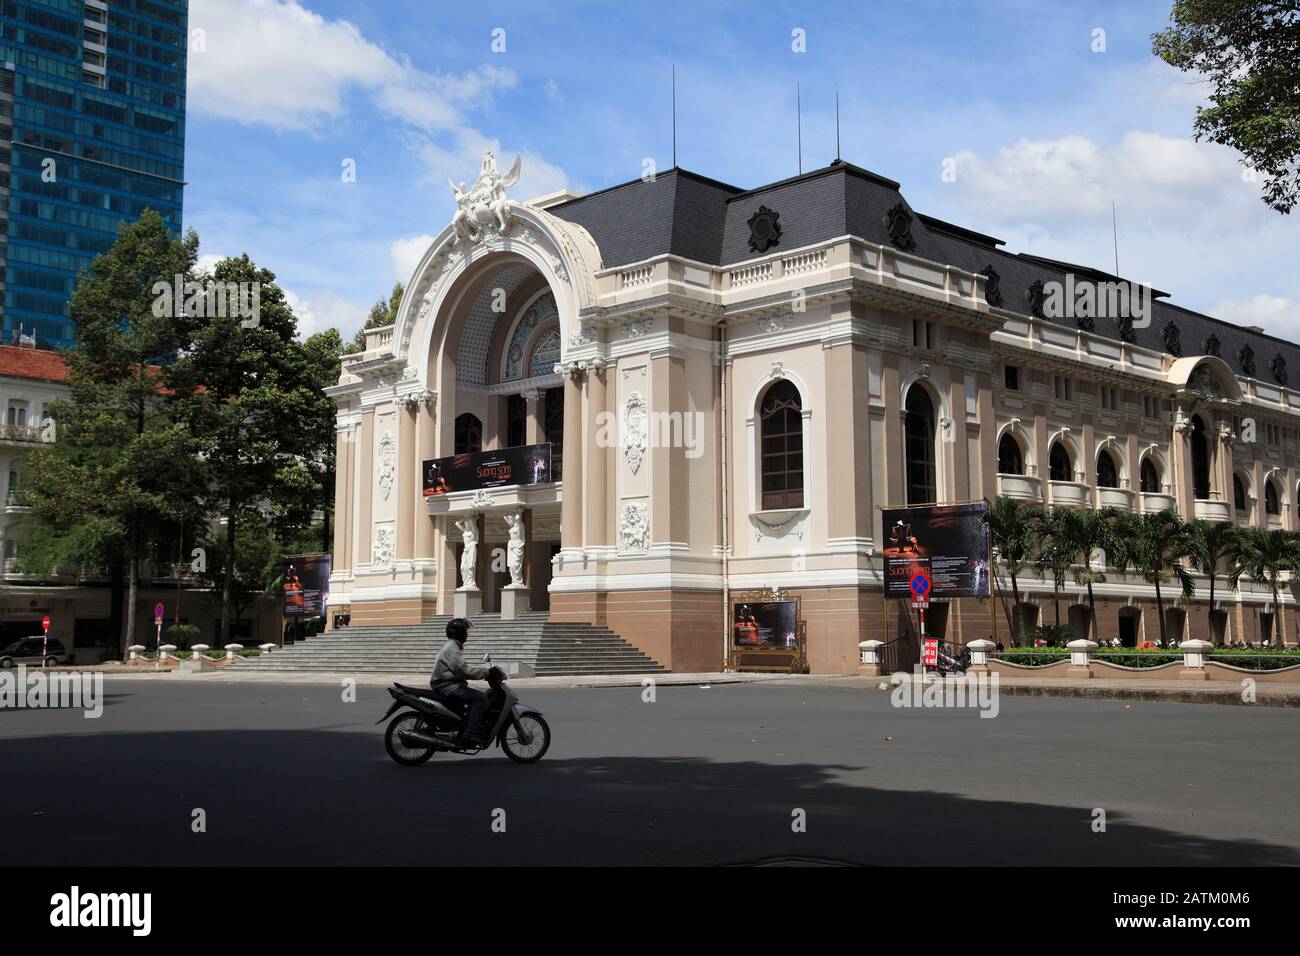 Städtisches Theater, Opernhaus, Kolonialarchitektur, Ho-Chi-Minh-Stadt, Saigon, Vietnam, Südost-Asien, Asien Stockfoto